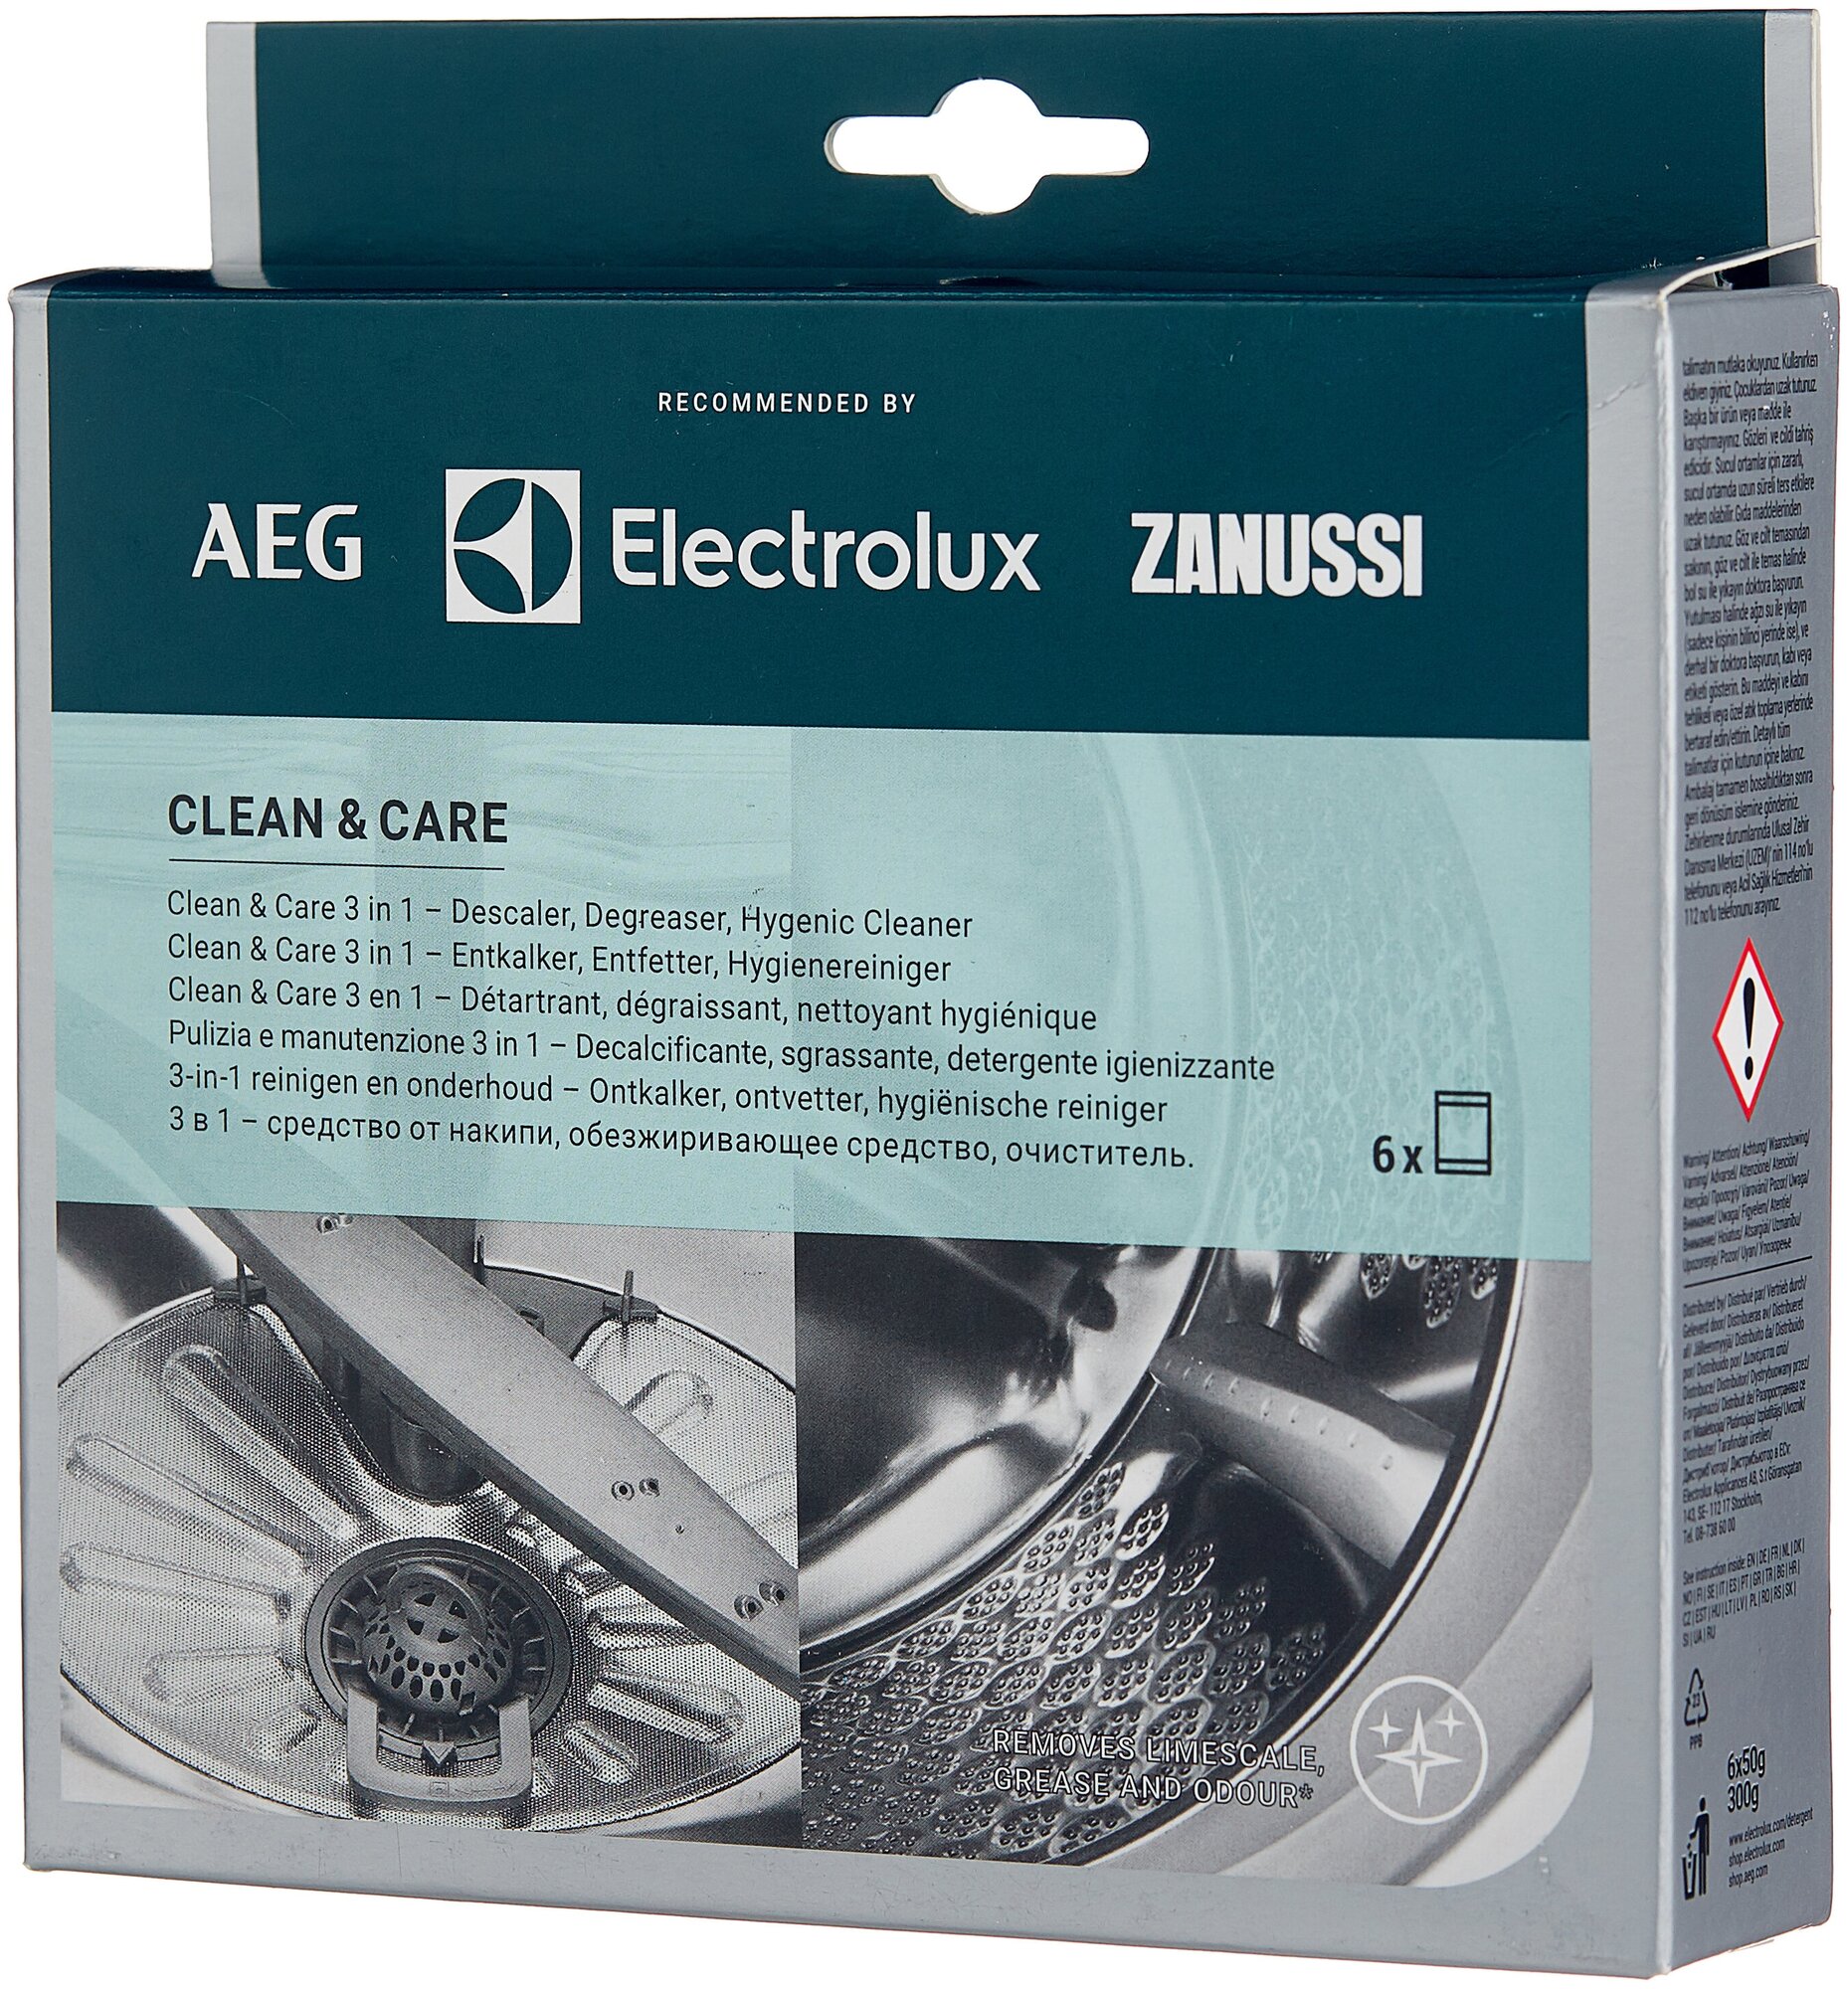 Clean & Care 3 в 1 Набор для чистки стиральной машины Electrolux